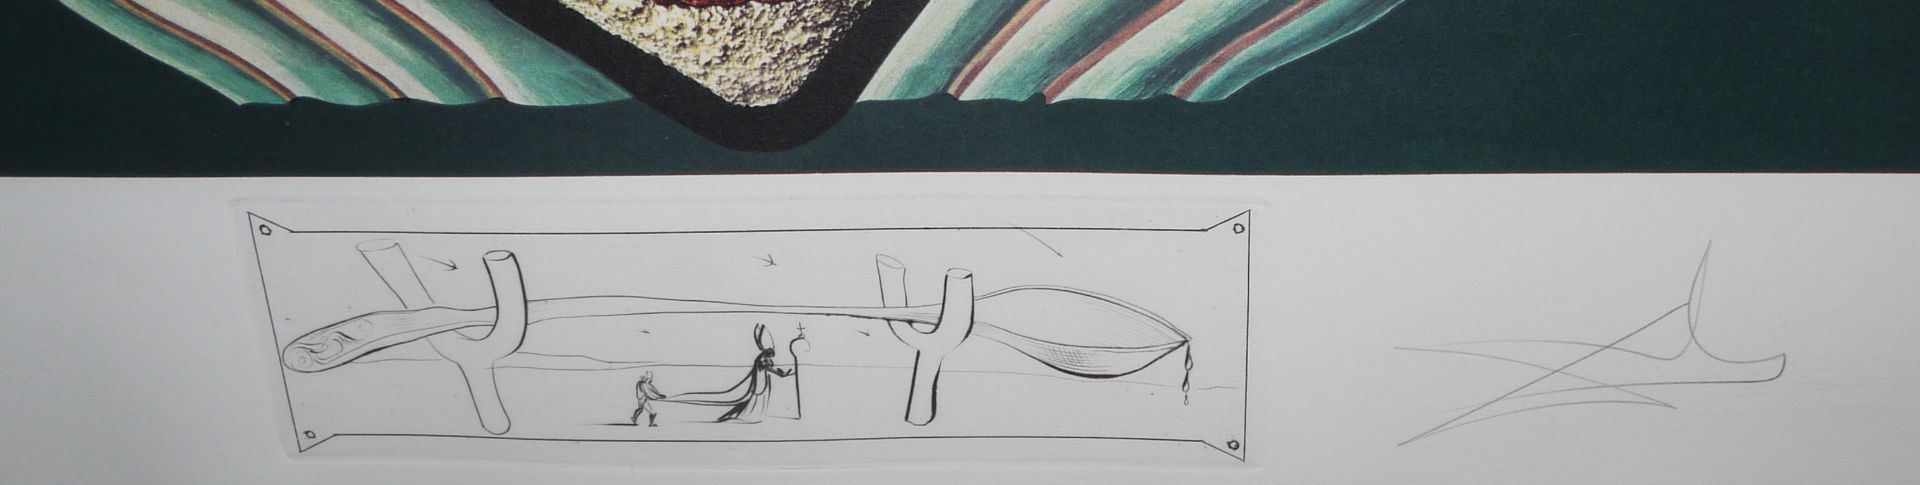 Salvador Dalí, "Les Chairs monarchiques", aus: "Les Dîners de Gala", Lithographien von 1971, signie - Bild 3 aus 3